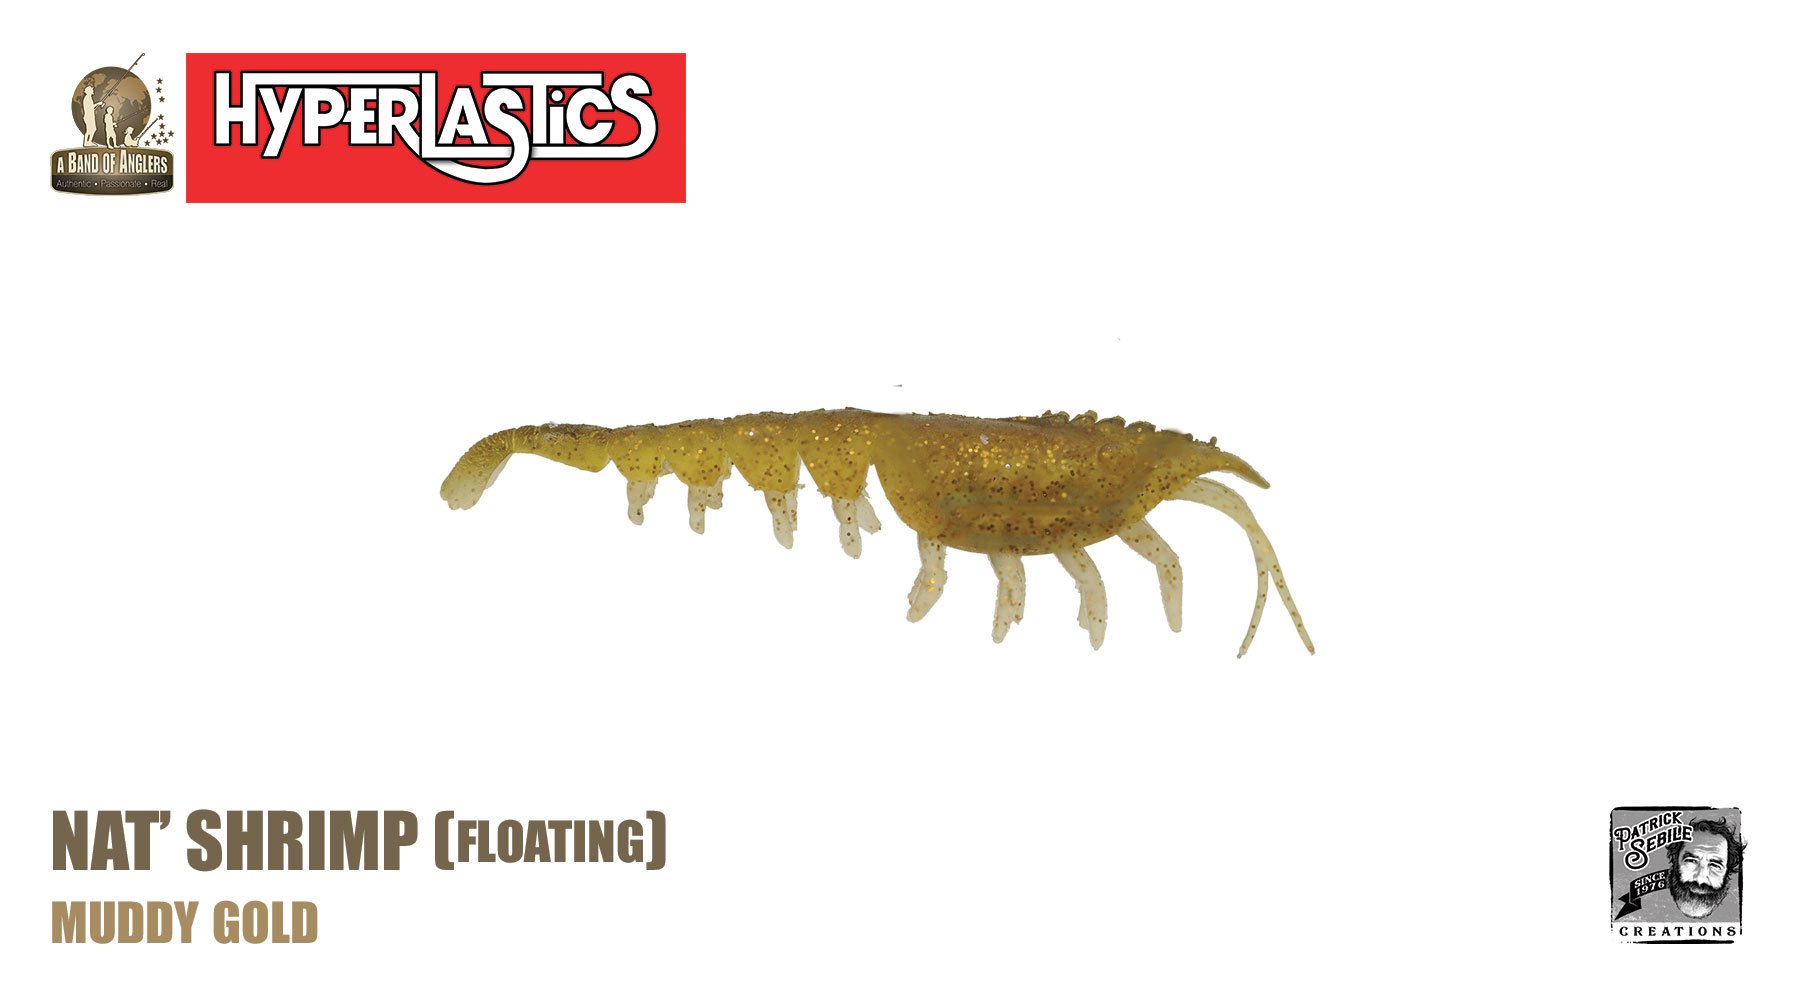 Hyperlastics Nat' Shrimp Floating 4 1/2 oz. Qty 3 - Muddy Gold